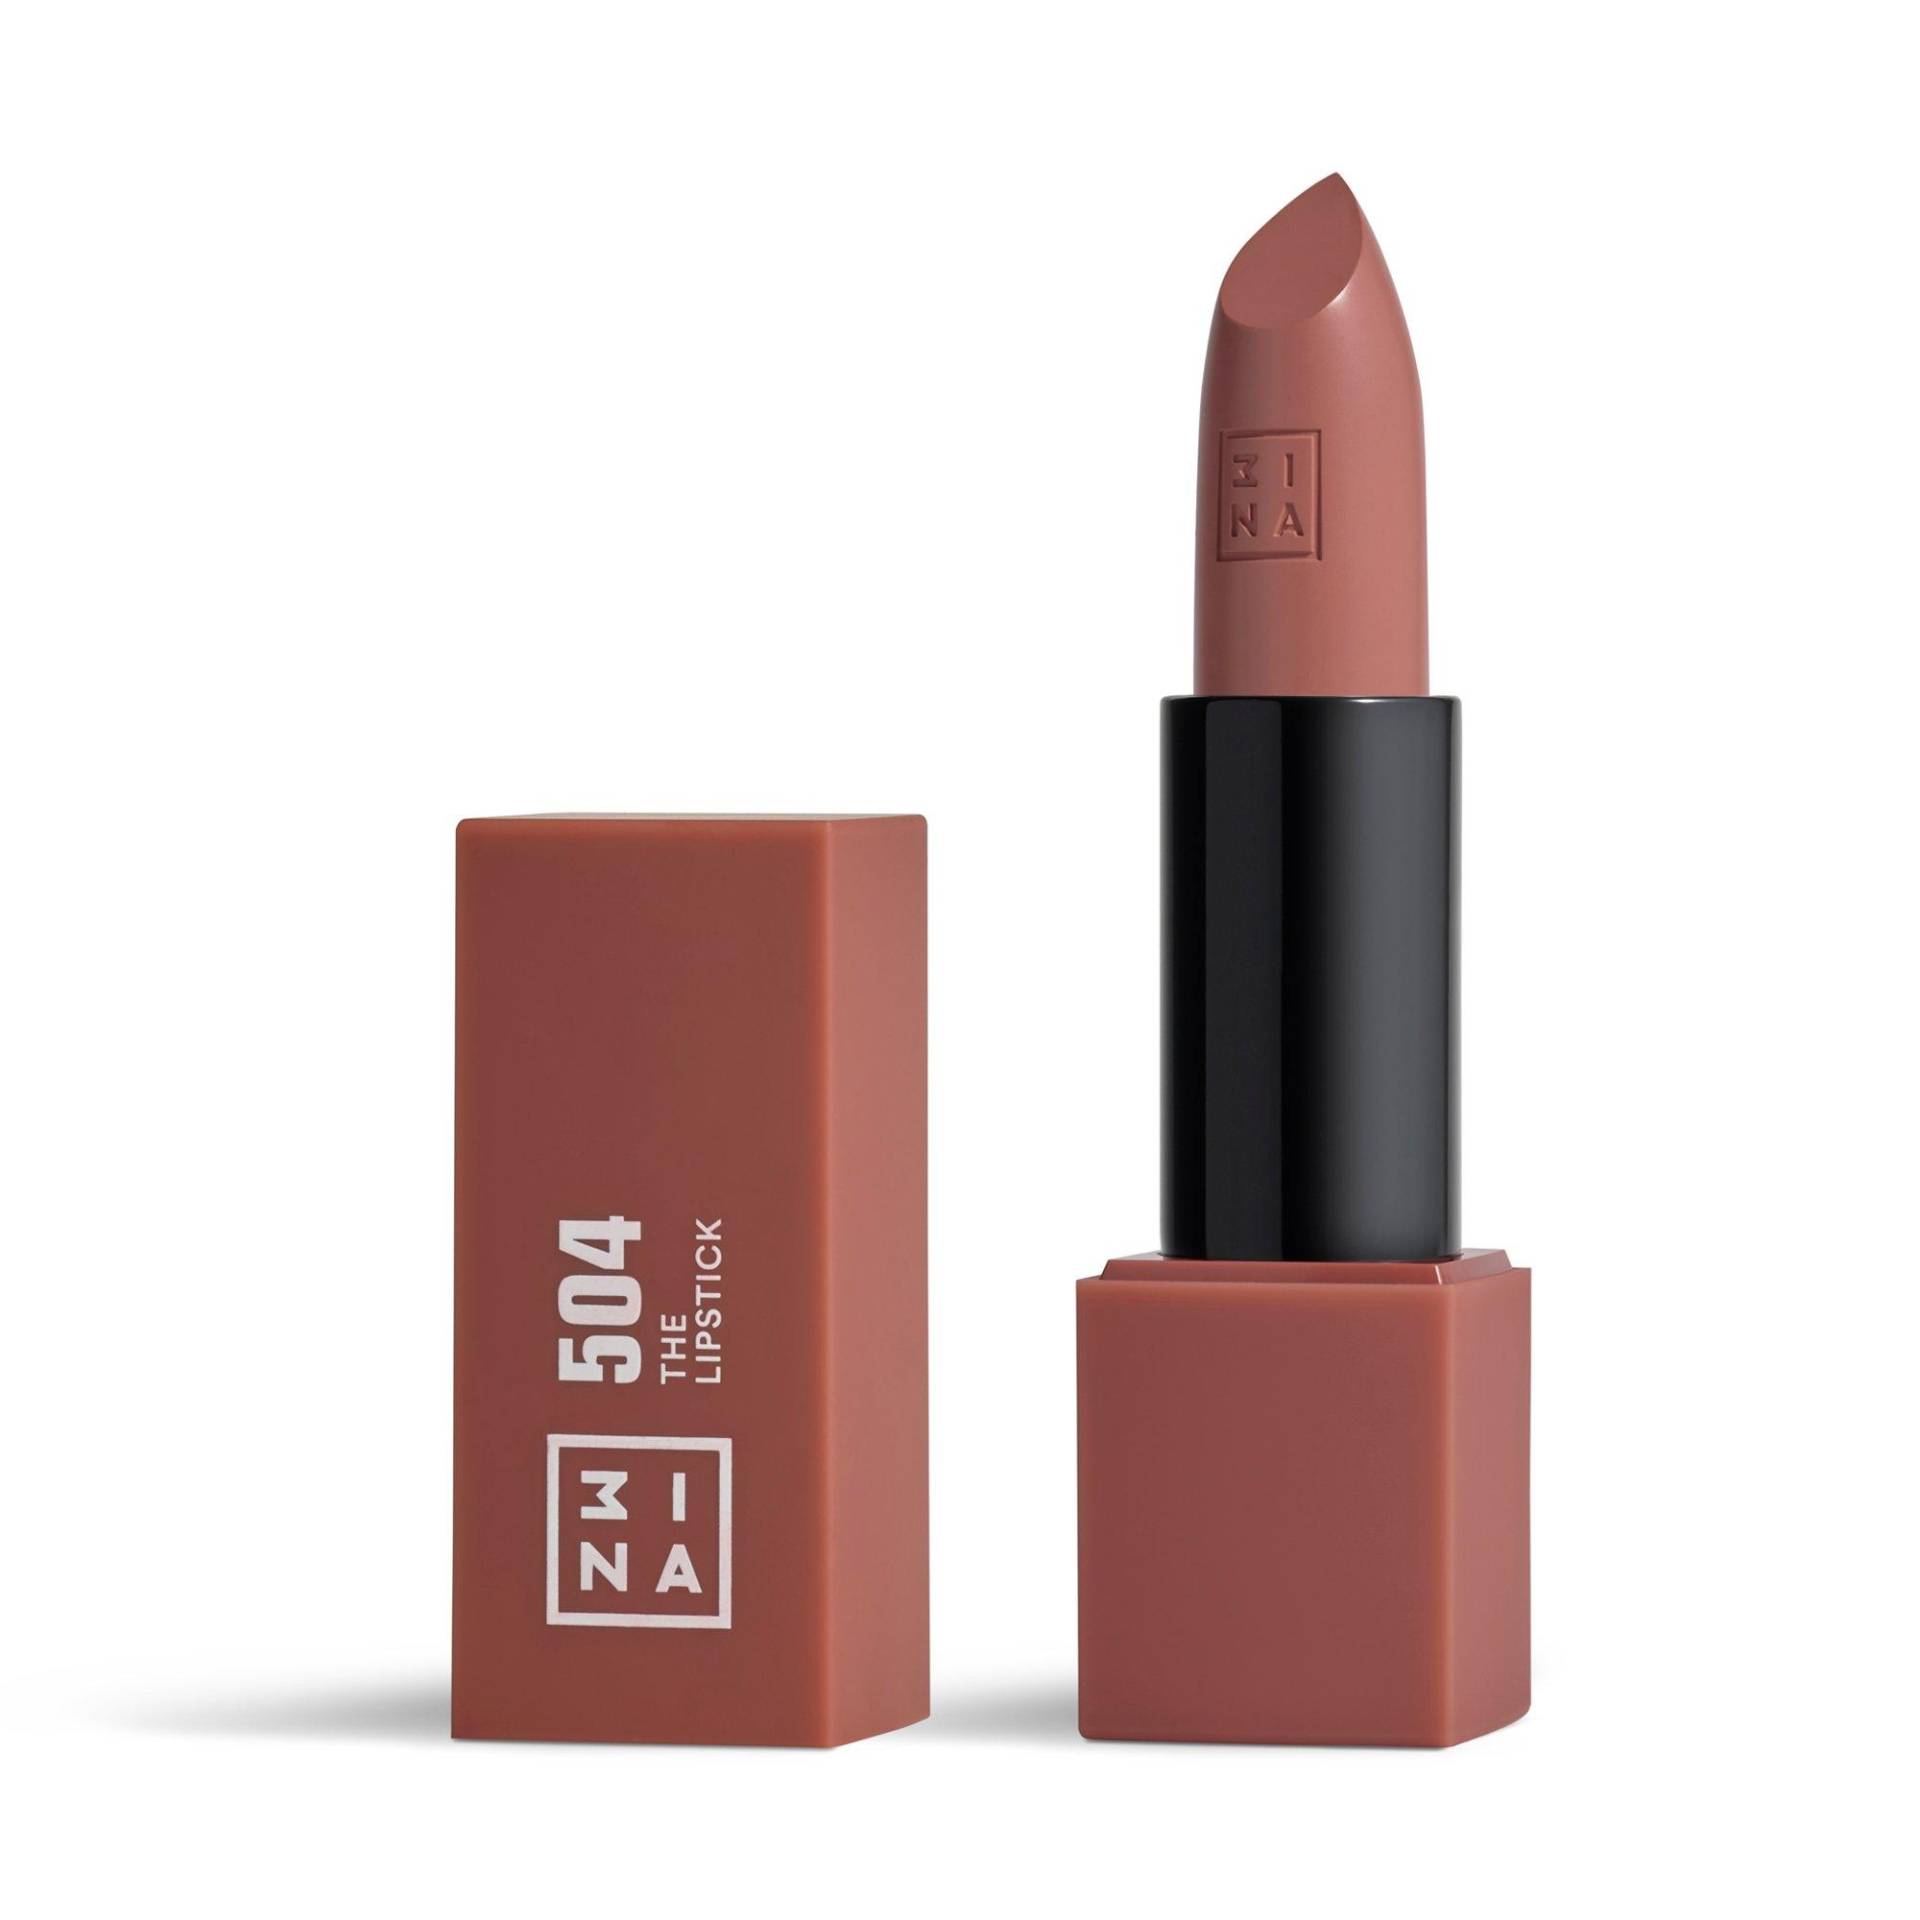 The Lipstick Damen von 3INA